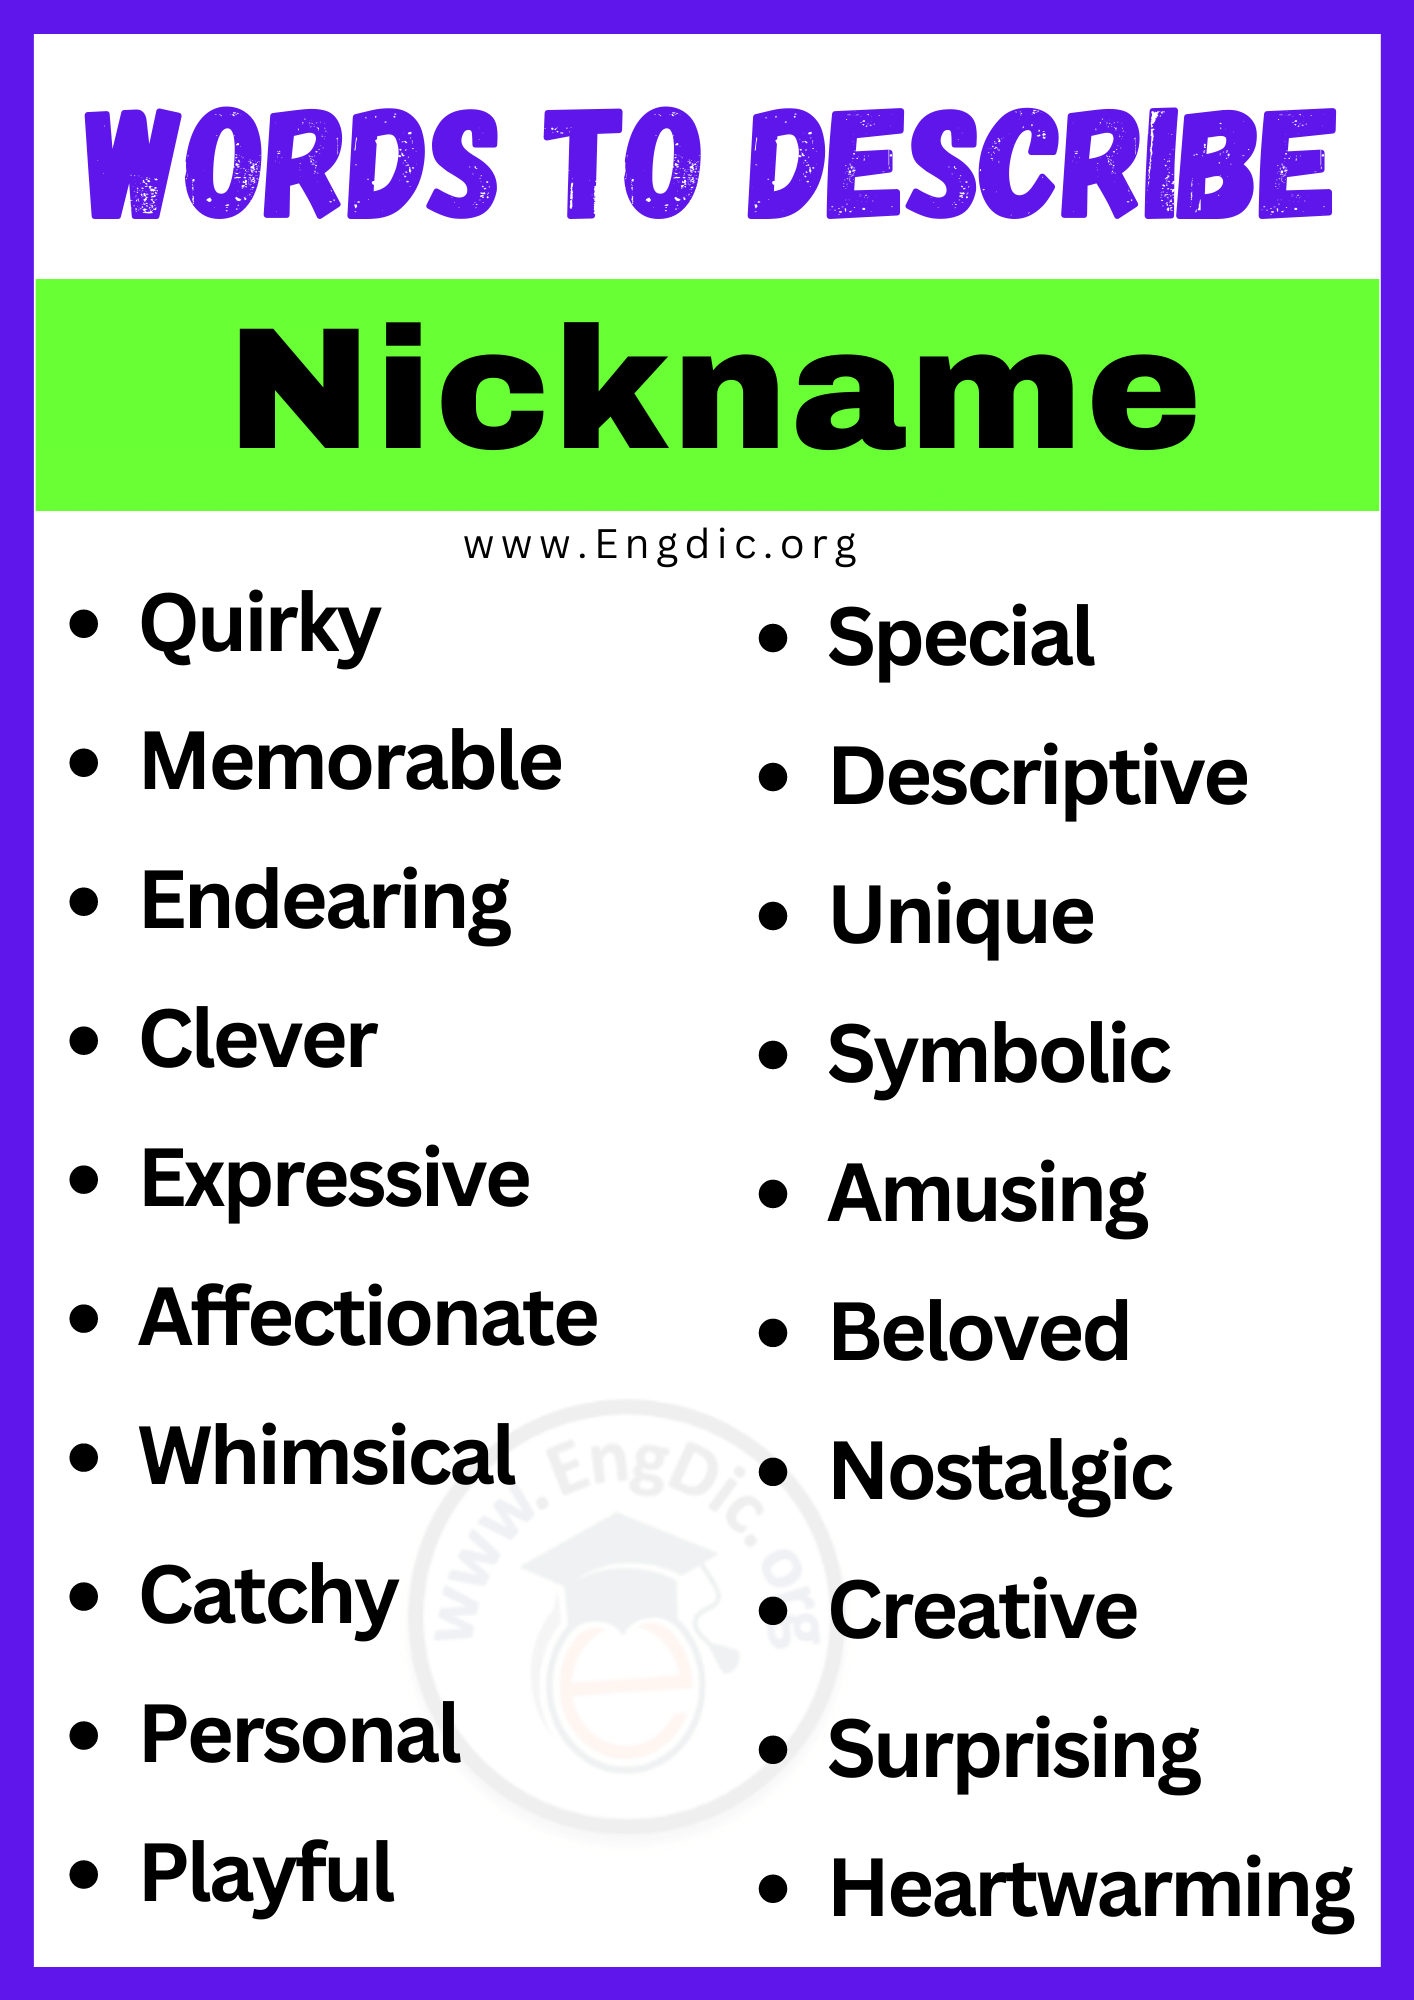 Words to Describe a Nickname